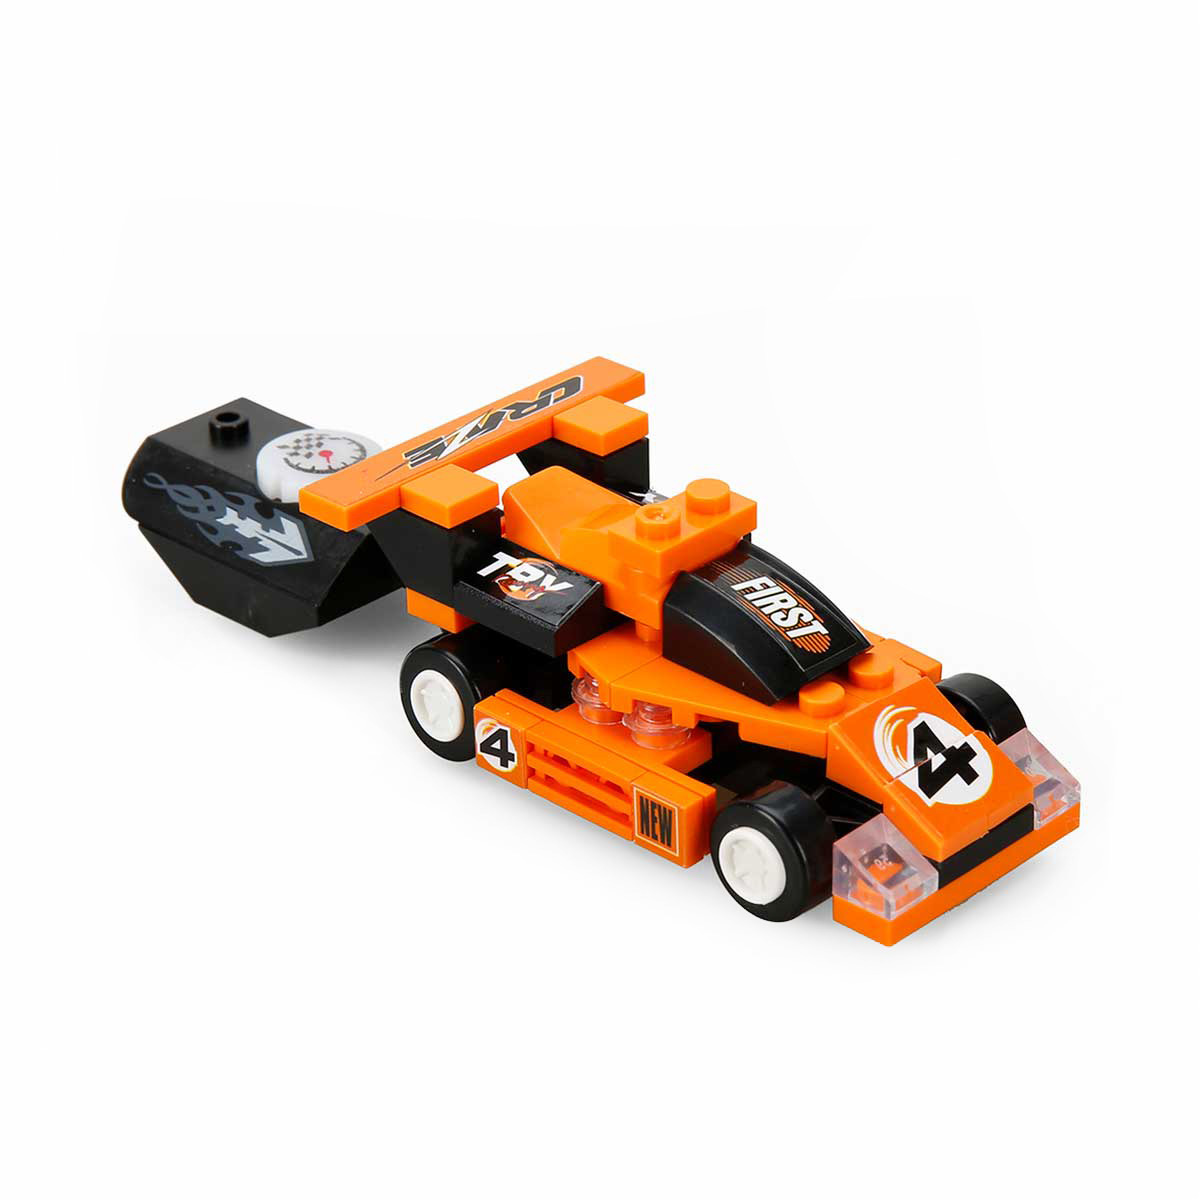 Kit de constructie pentru masini de curse, Blx Racing, C0301A